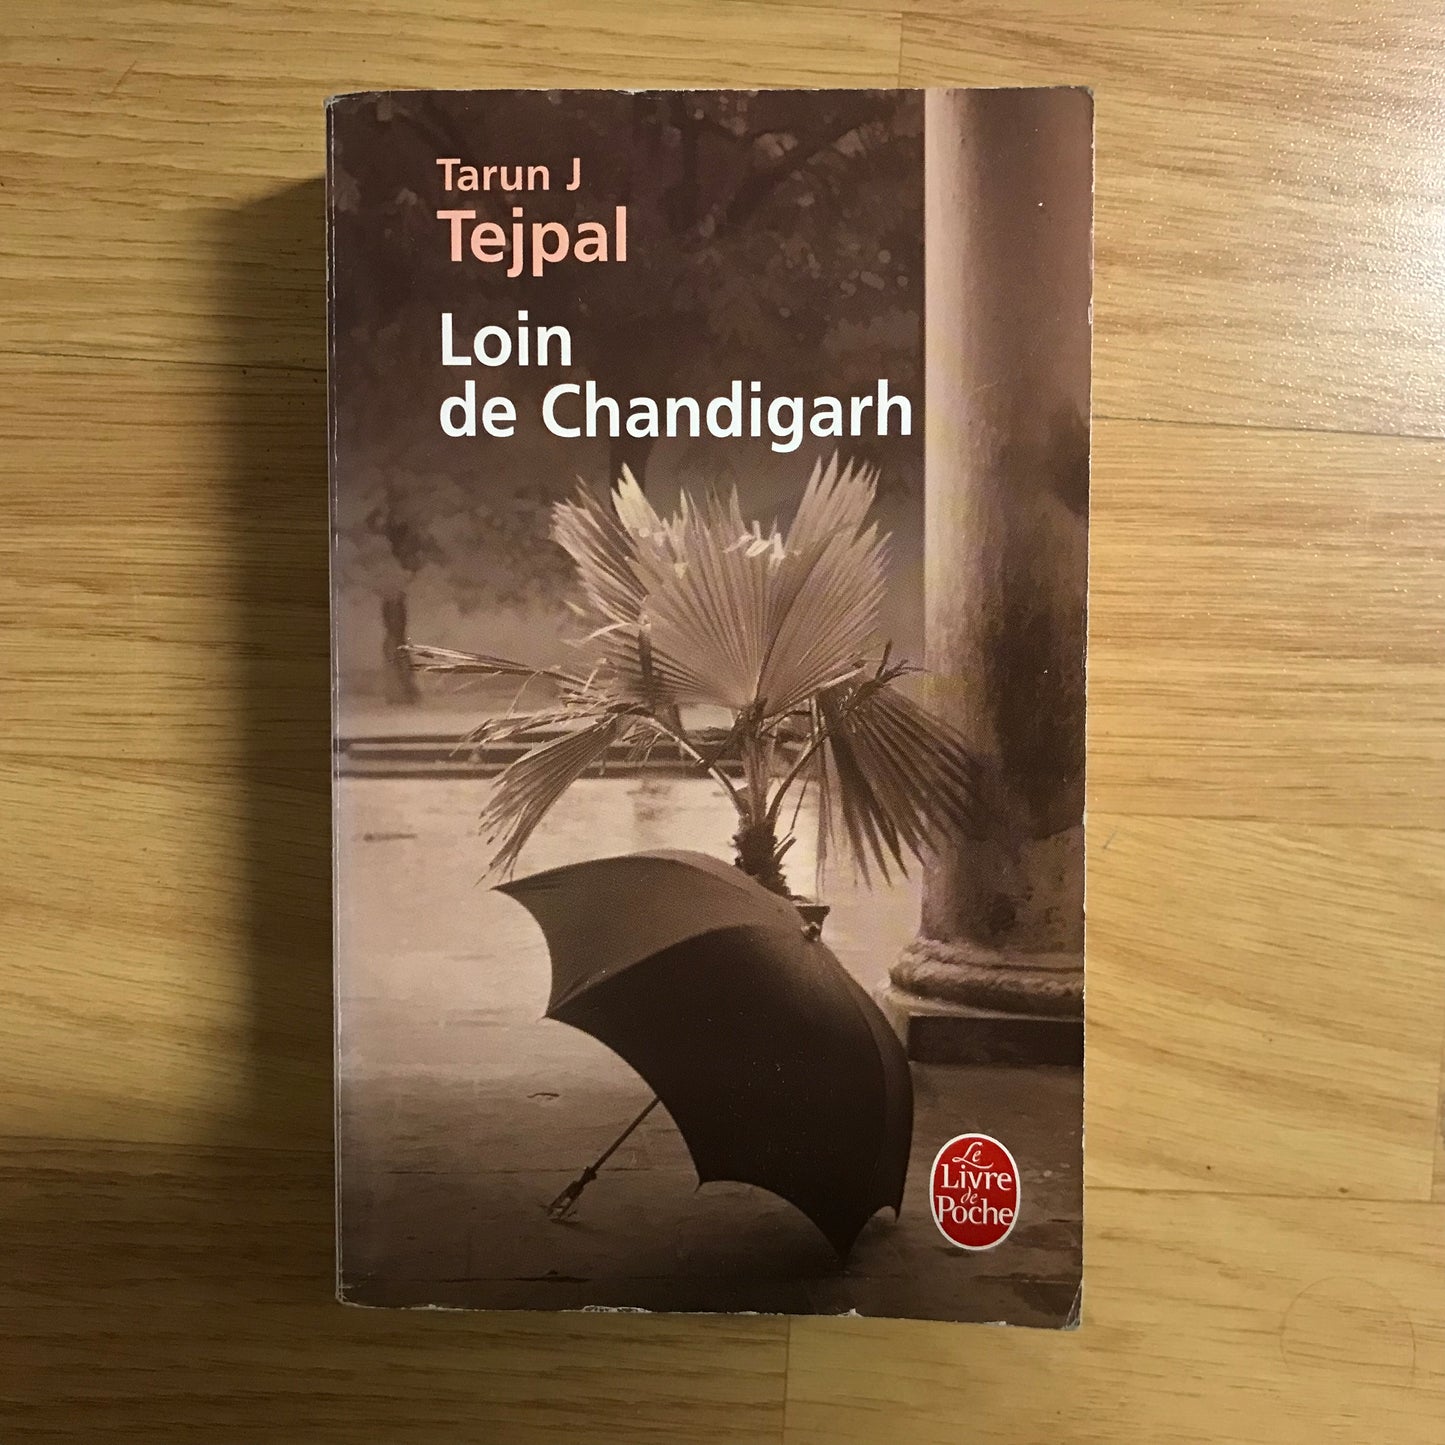 Tejpal, Tarun J - Loin de Chandigarh